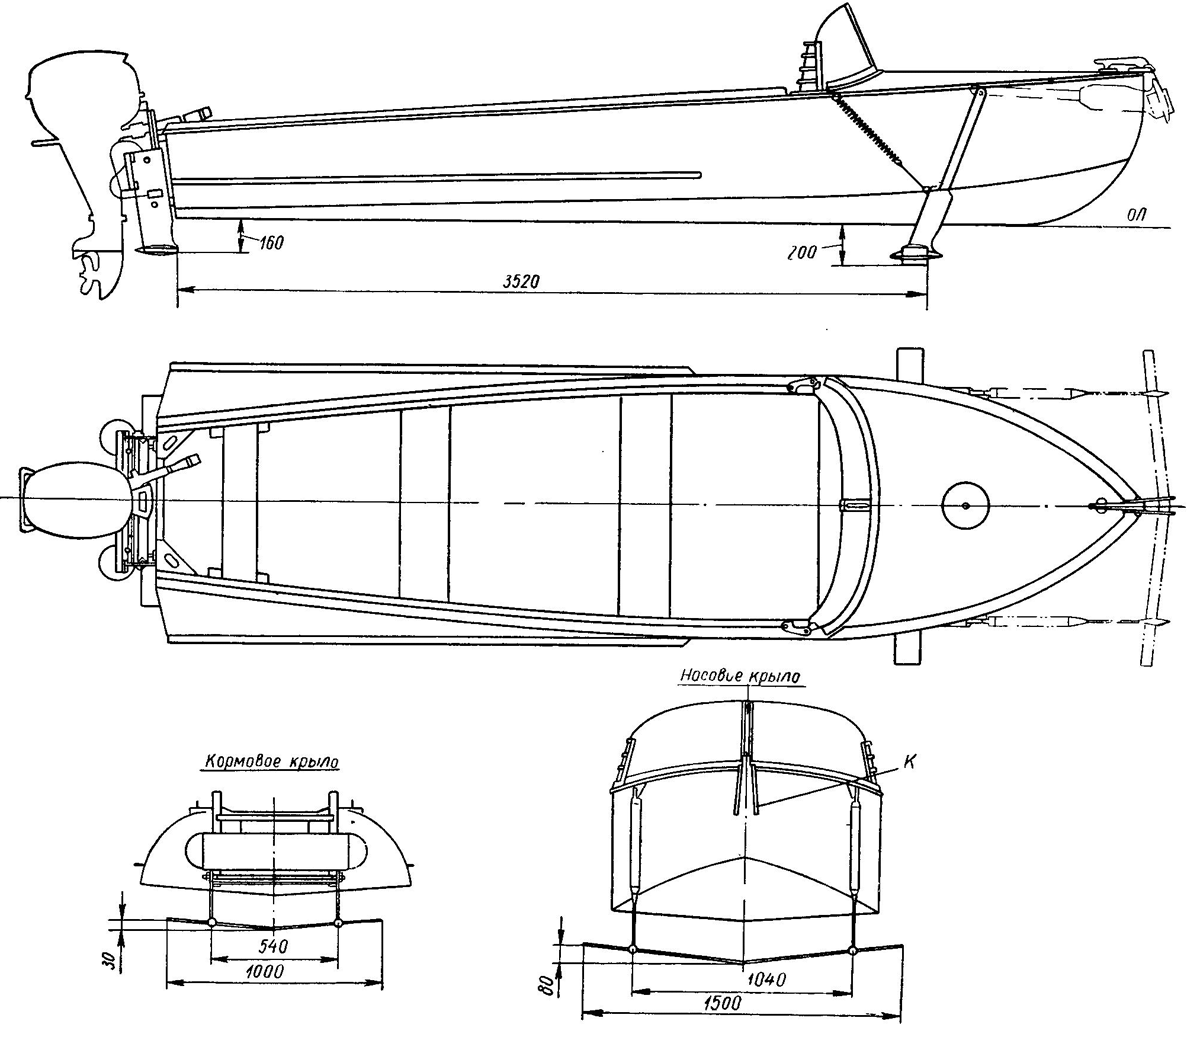 Моторная лодка казанка, казанка-м. характеристики лодки «казанка-м»